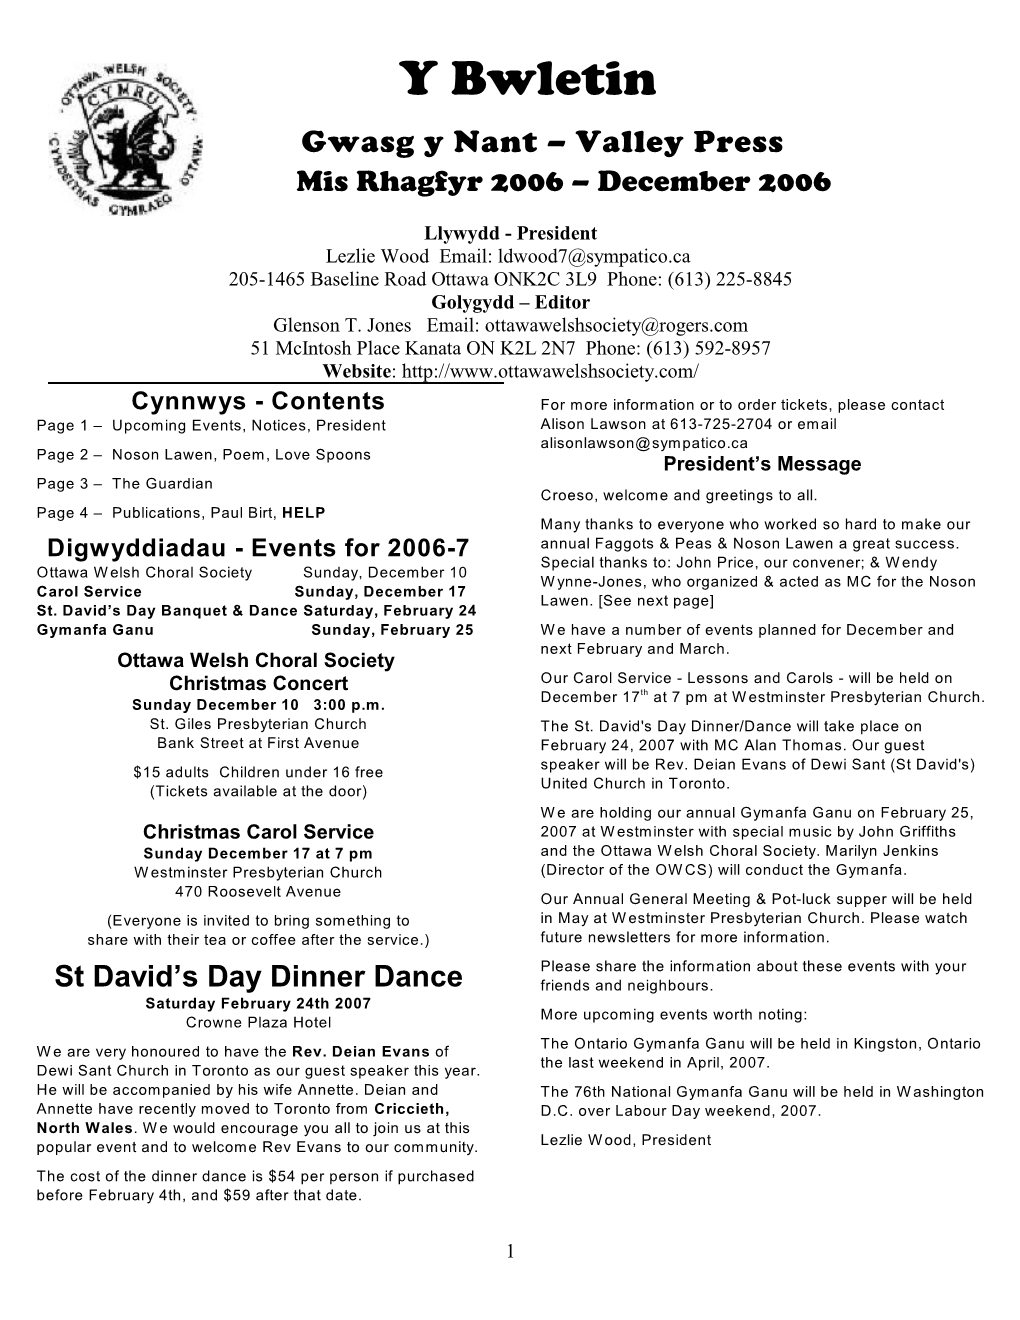 Y Bwletin Gwasg Y Nant – Valley Press Mis Rhagfyr 2006 – December 2006